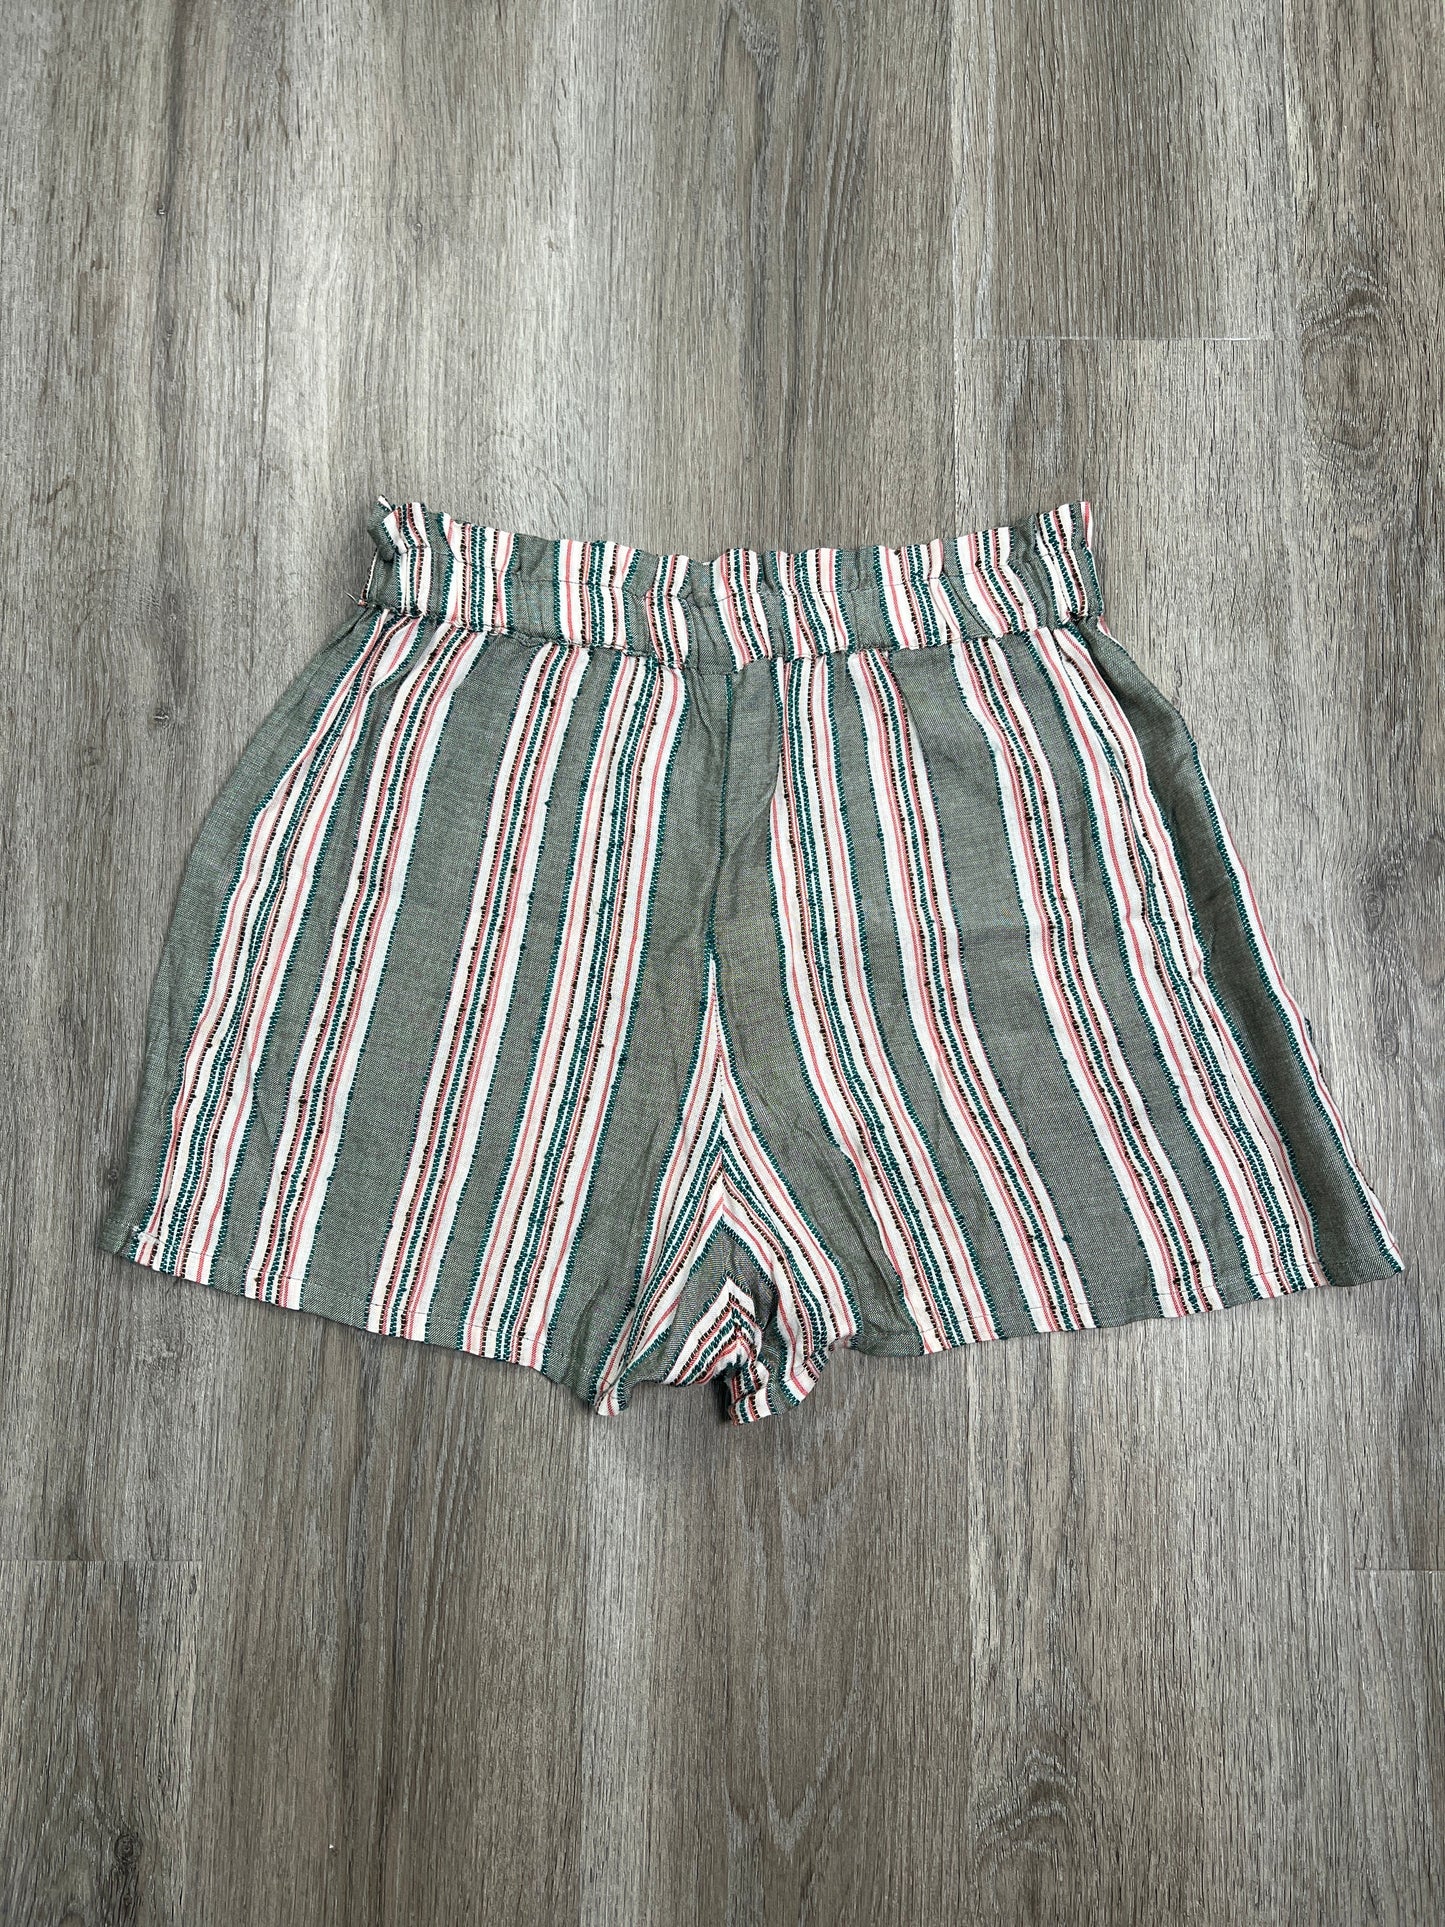 Striped Pattern Shorts Angie, Size M